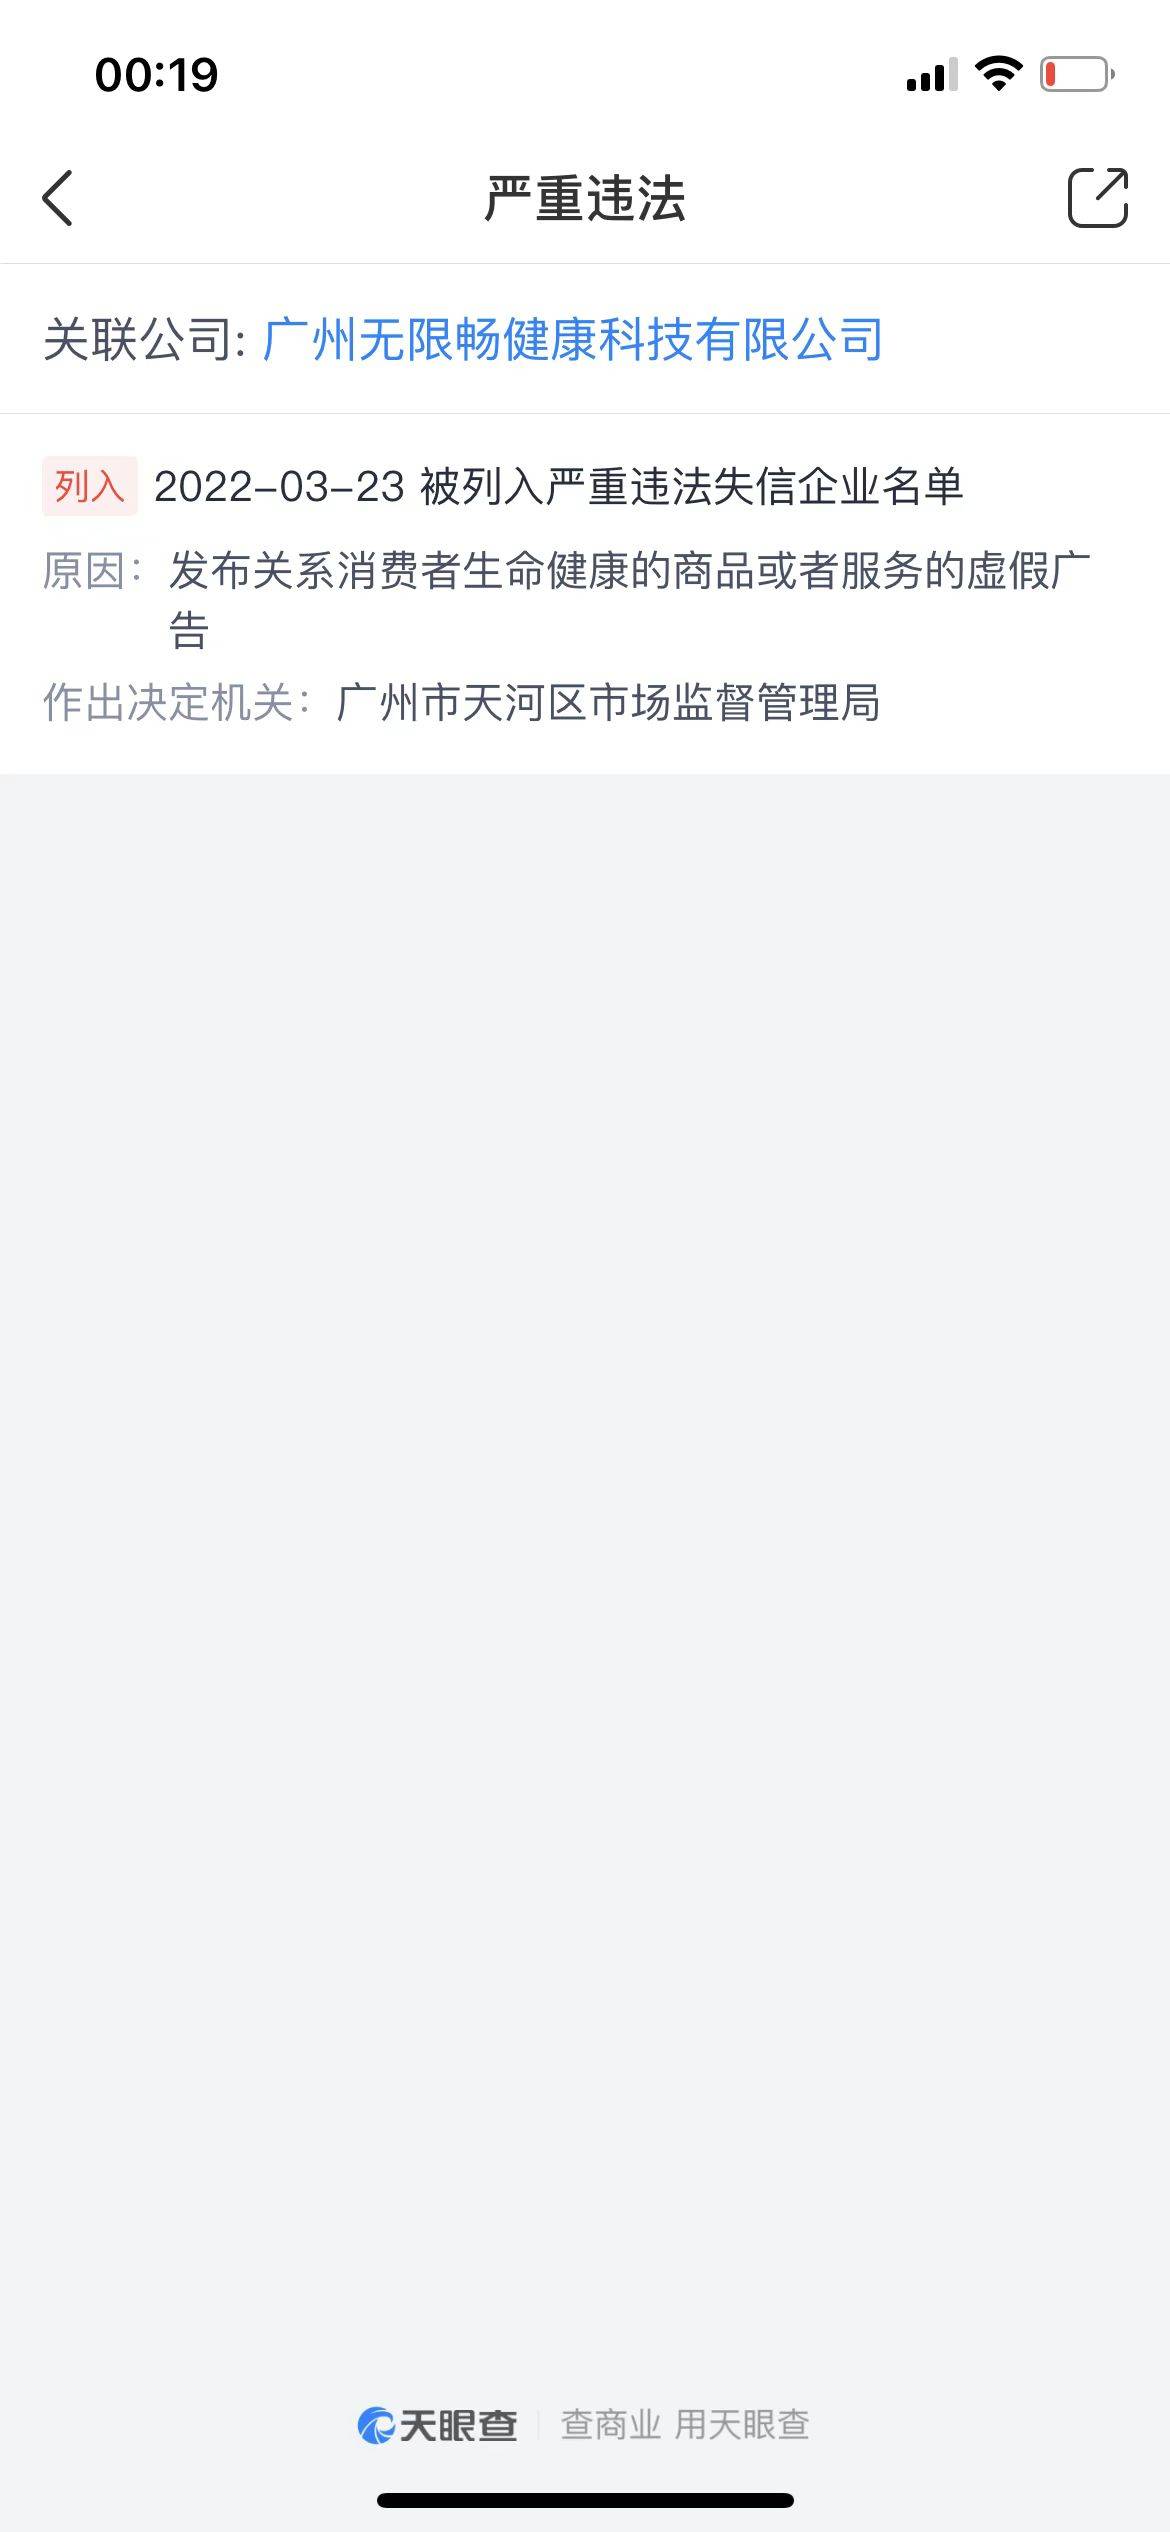 广东省广州市市场监管部门对演员景甜违法广告代言行为依法作出行政处罚